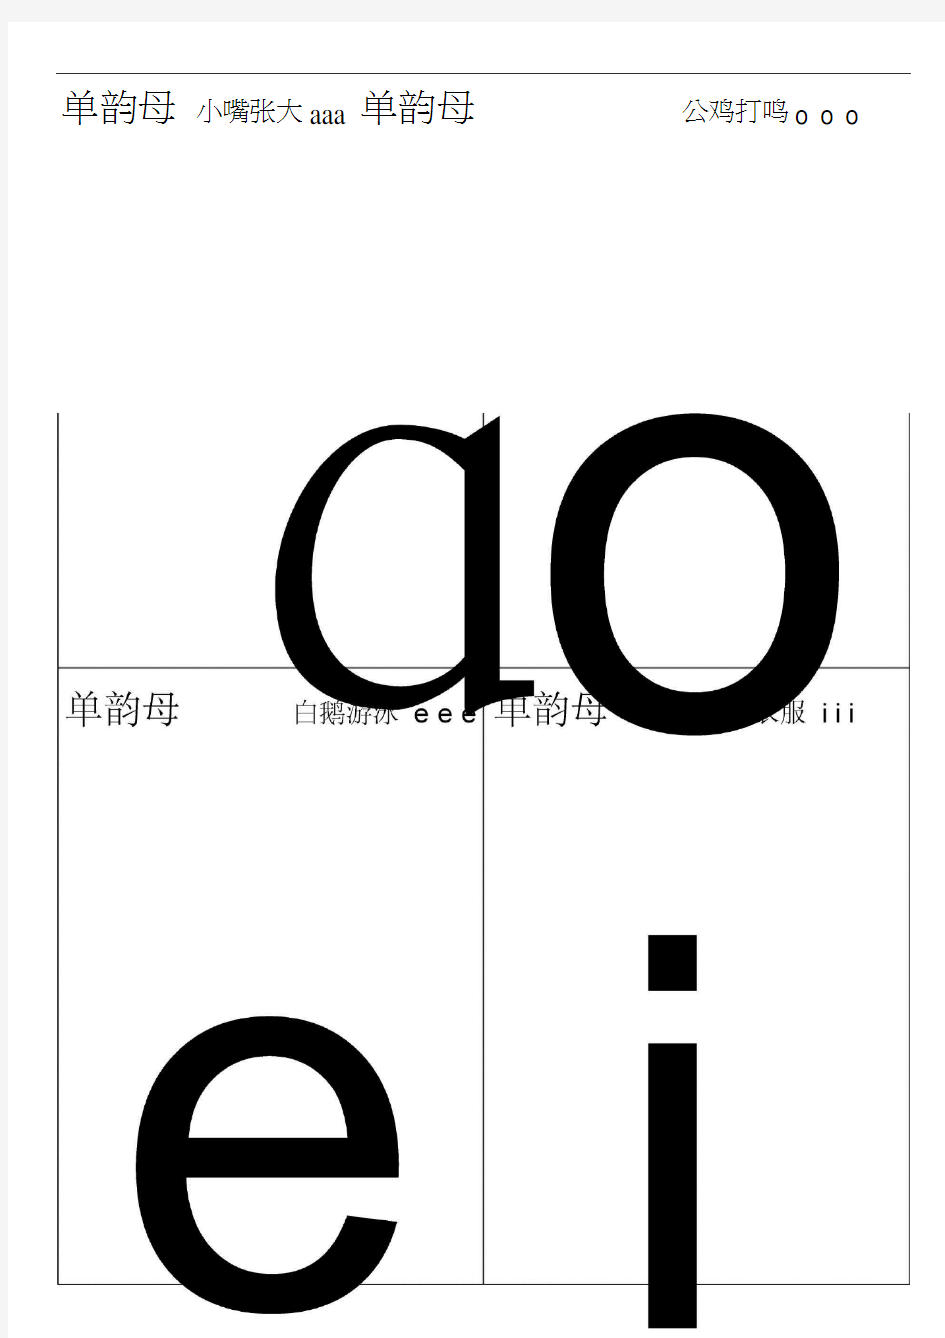 汉语拼音字母表卡片